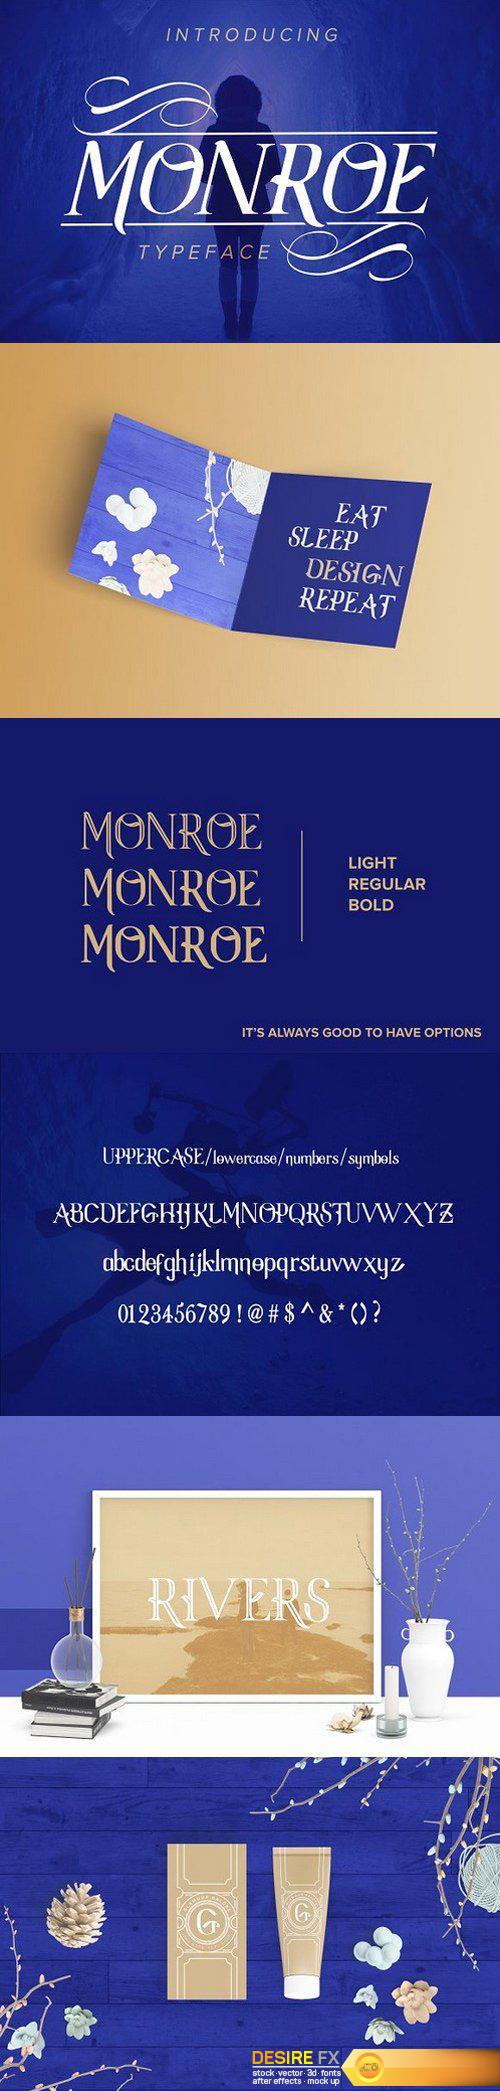 CM - Monroe Font Family NEW 1323520